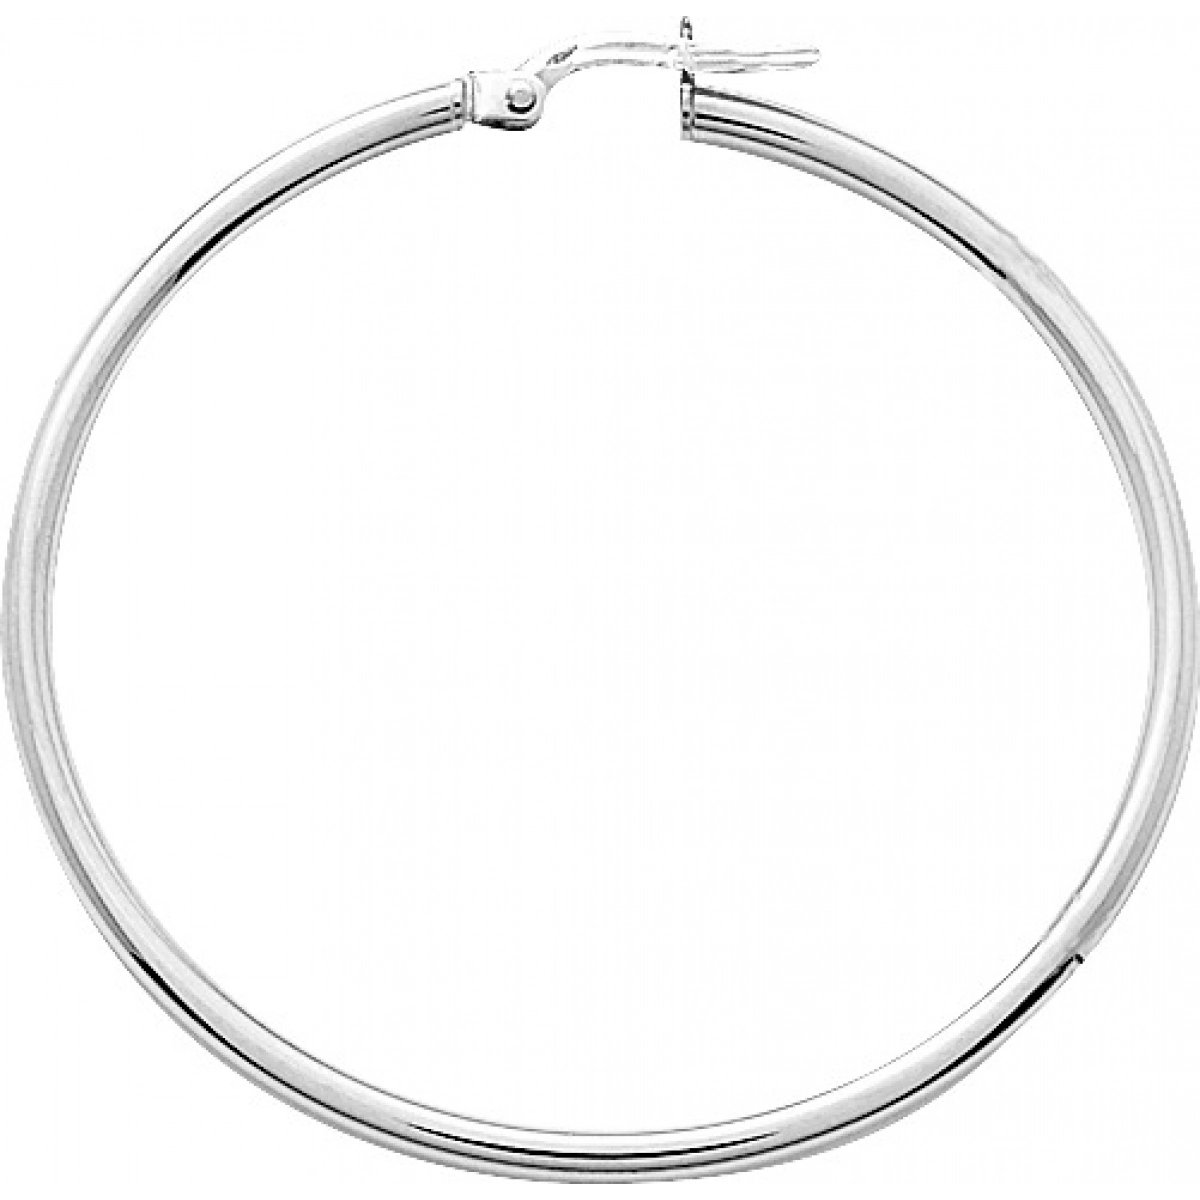 Hoops earrings pair plain 9K WG  Lua Blanca  651002.5.0